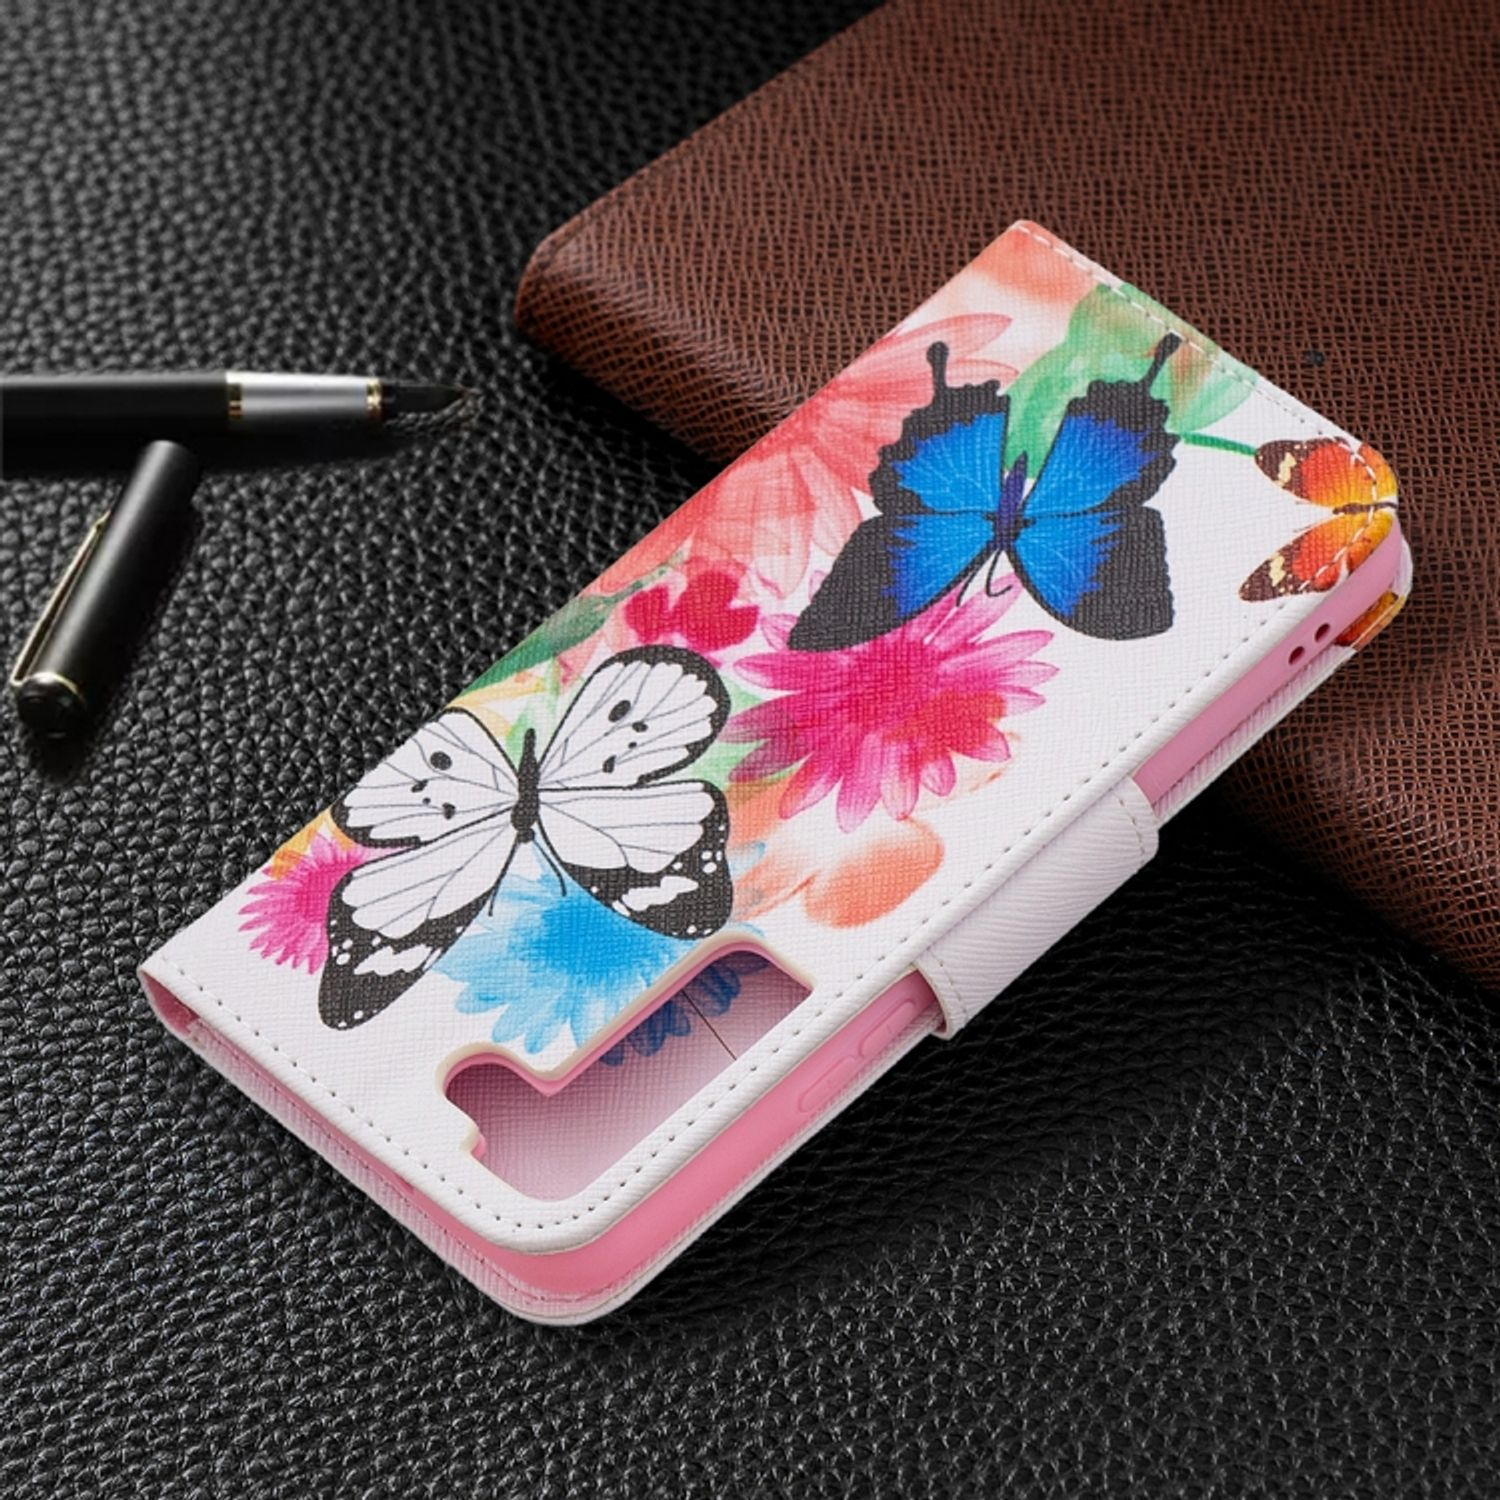 Samsung, Schmetterlinge Book Case, Bookcover, KÖNIG 5G, DESIGN S22 Galaxy